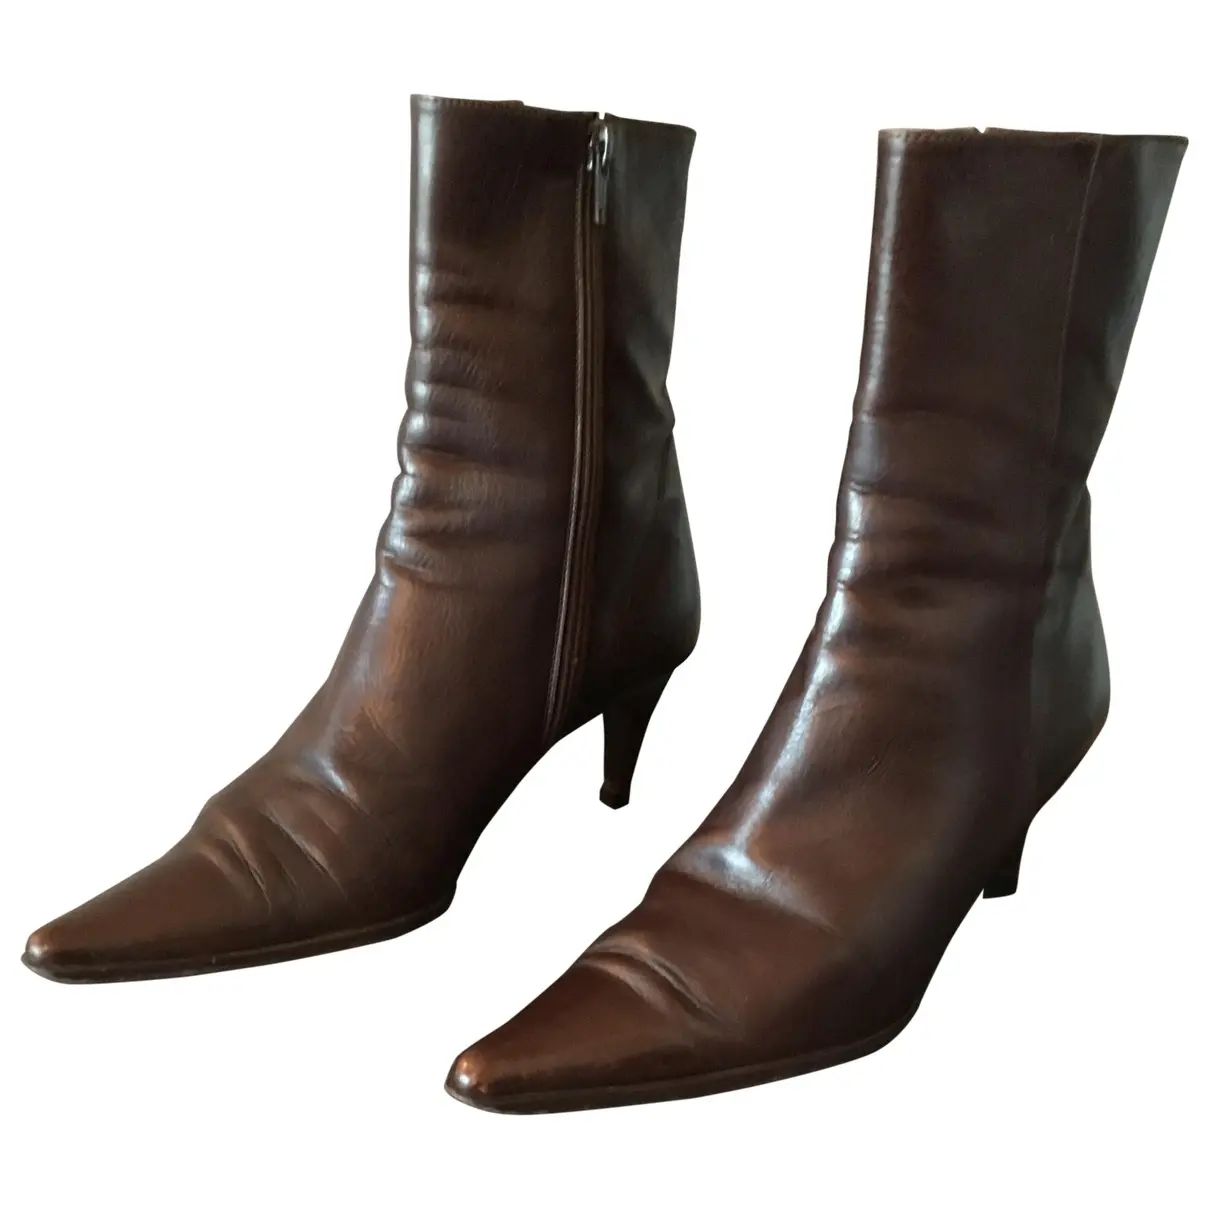 Leather ankle boots Jaime Mascaro